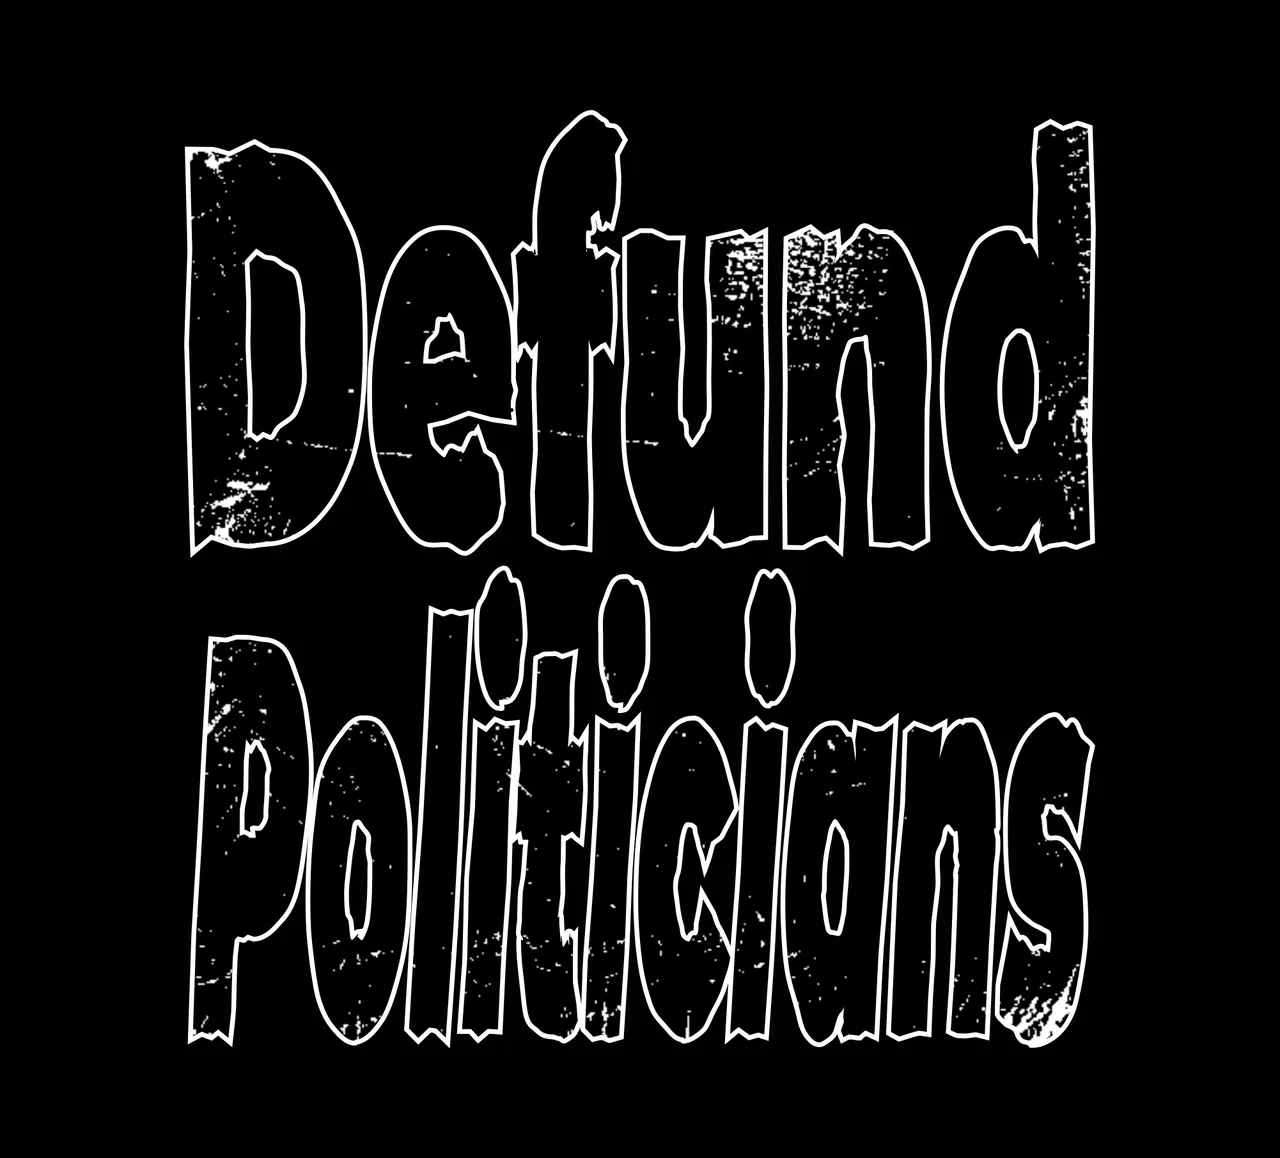 defund_politicians.jpg